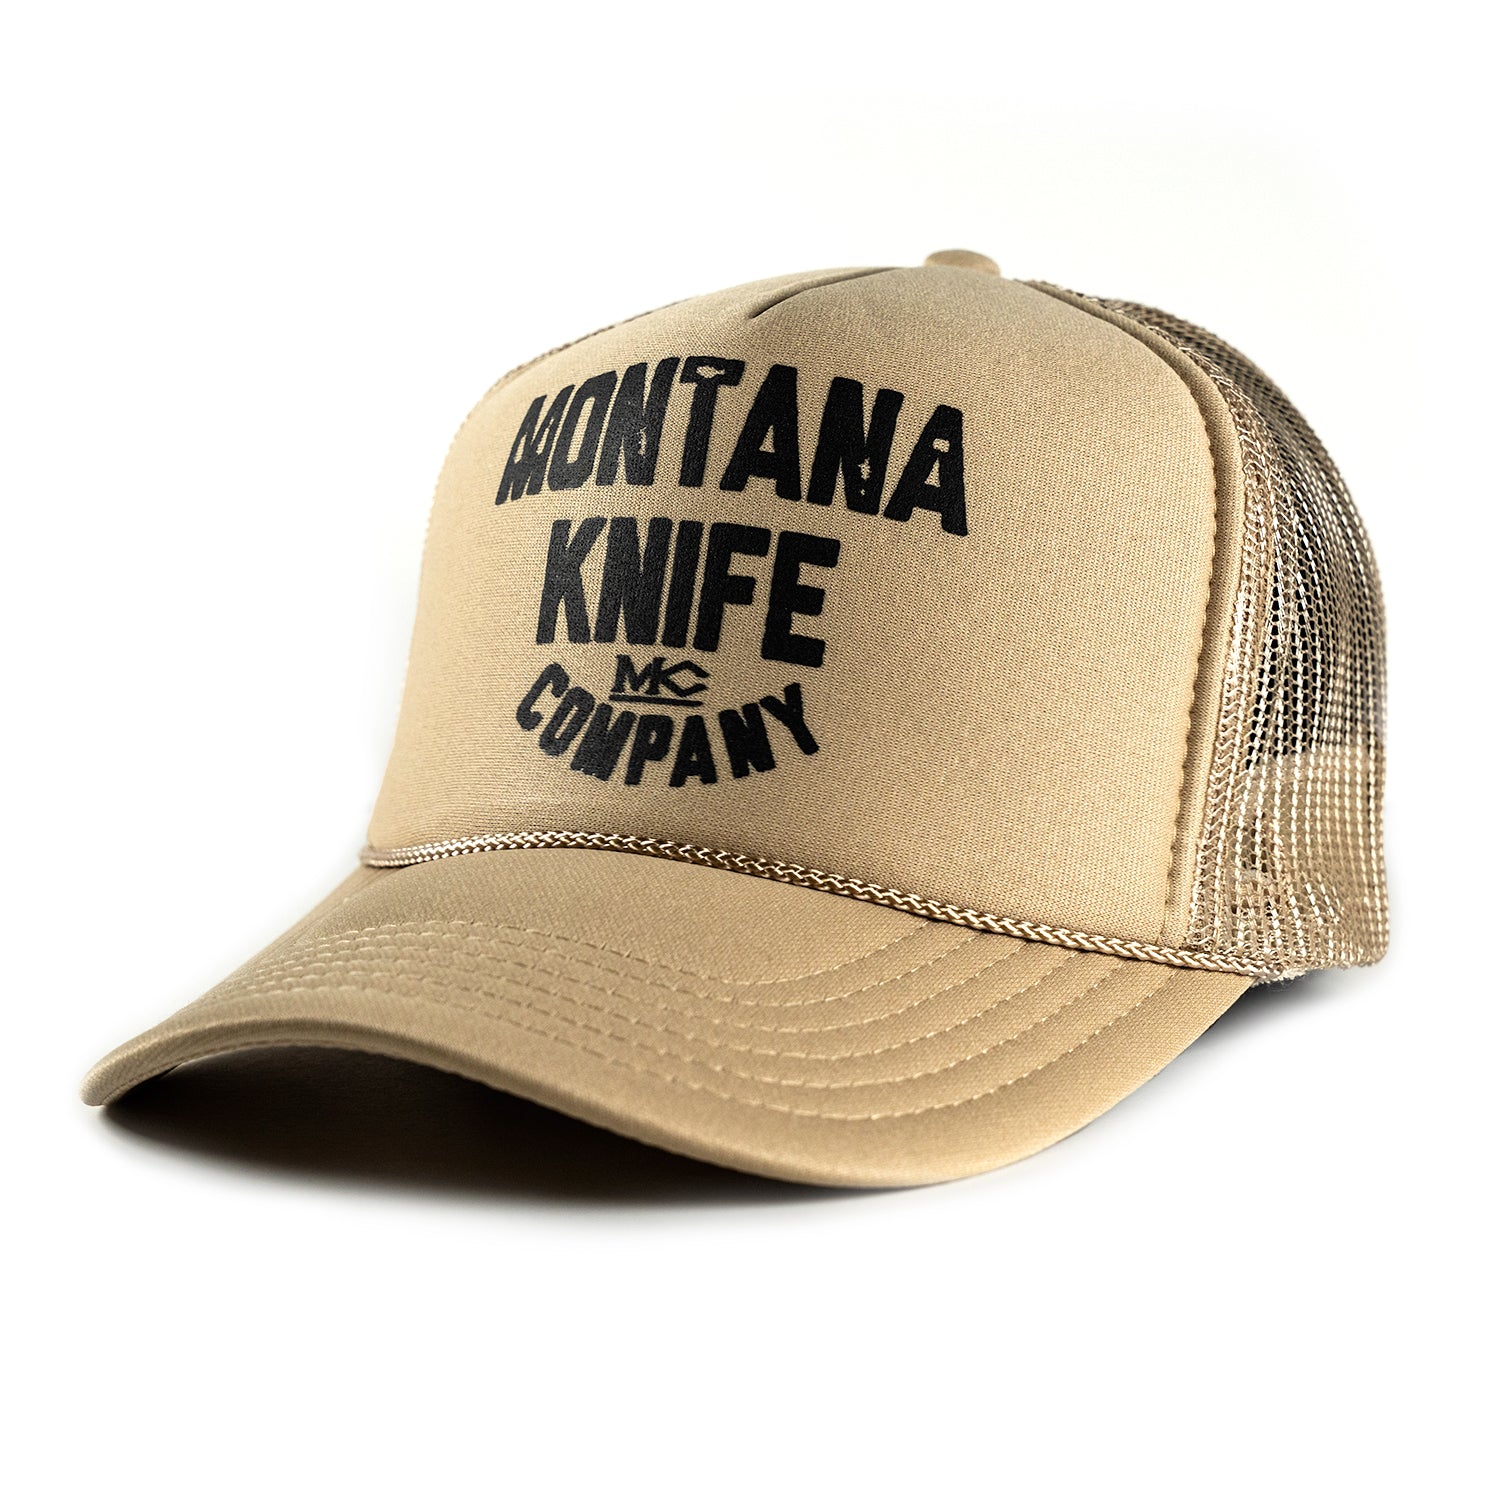 MONTANA KNIFE CO - FOAM TRUCKER HAT - TAN